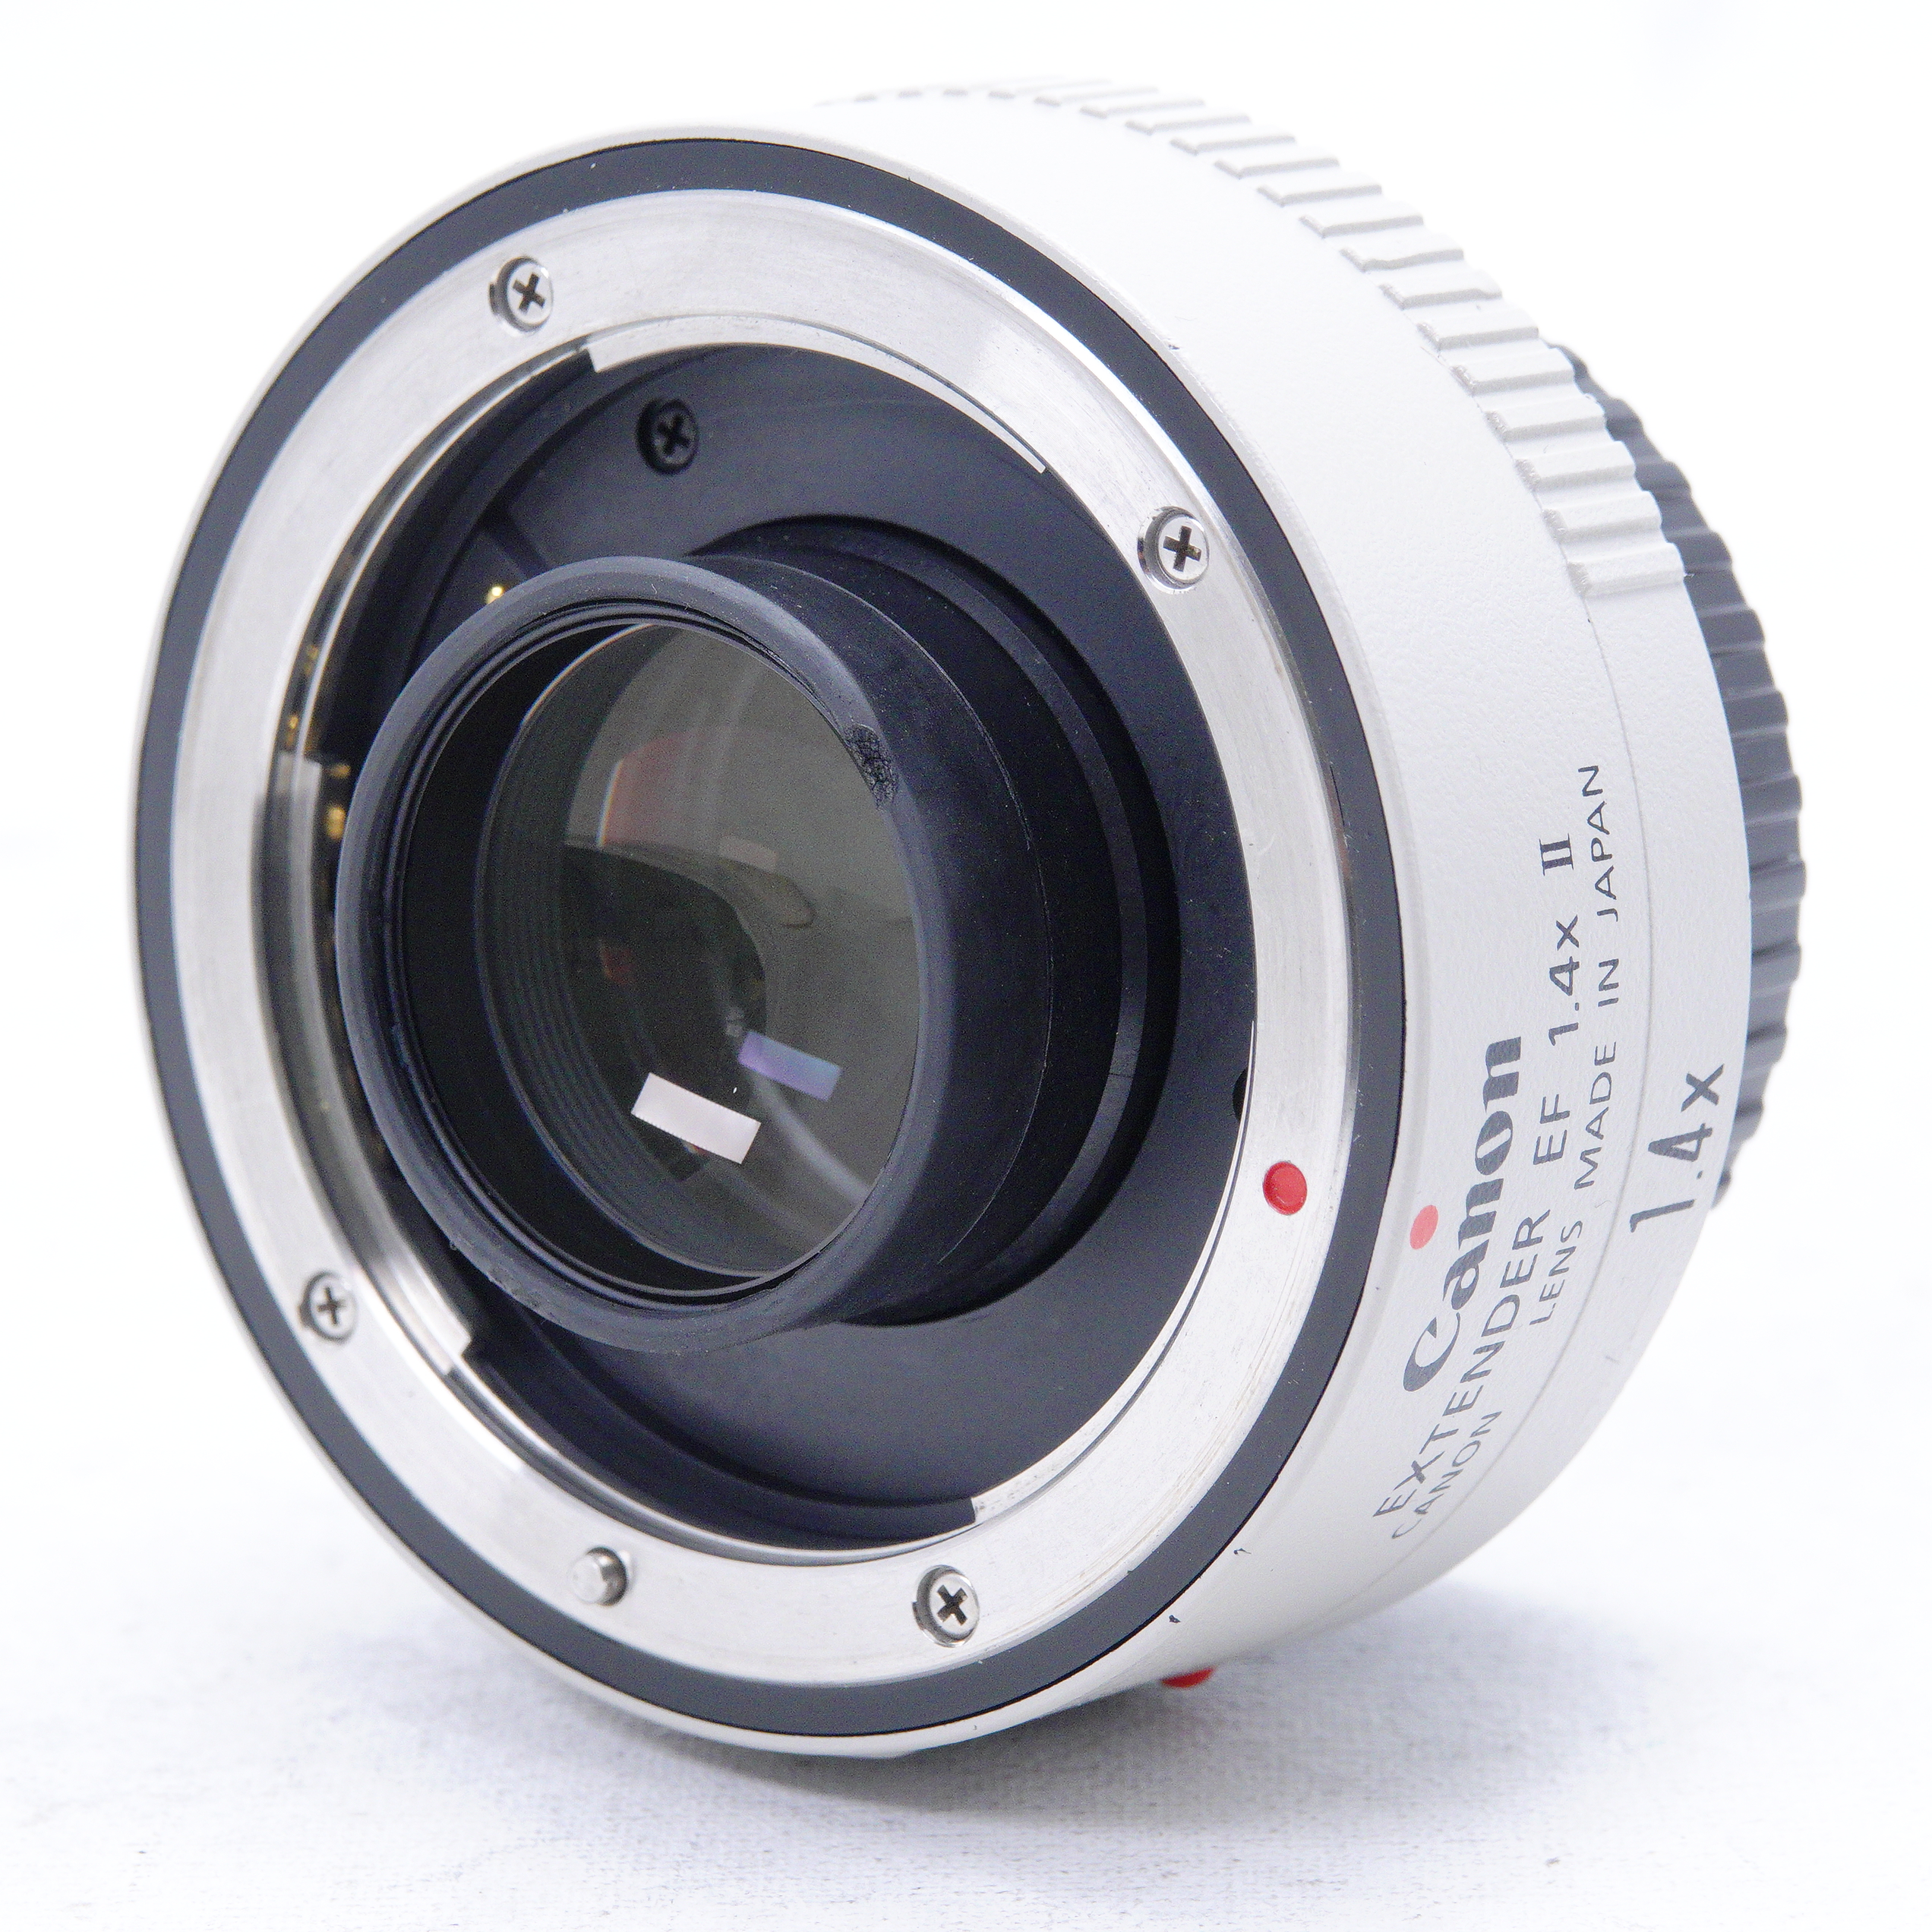 Teleconverter Canon 1.4x EF Extender II - Usado